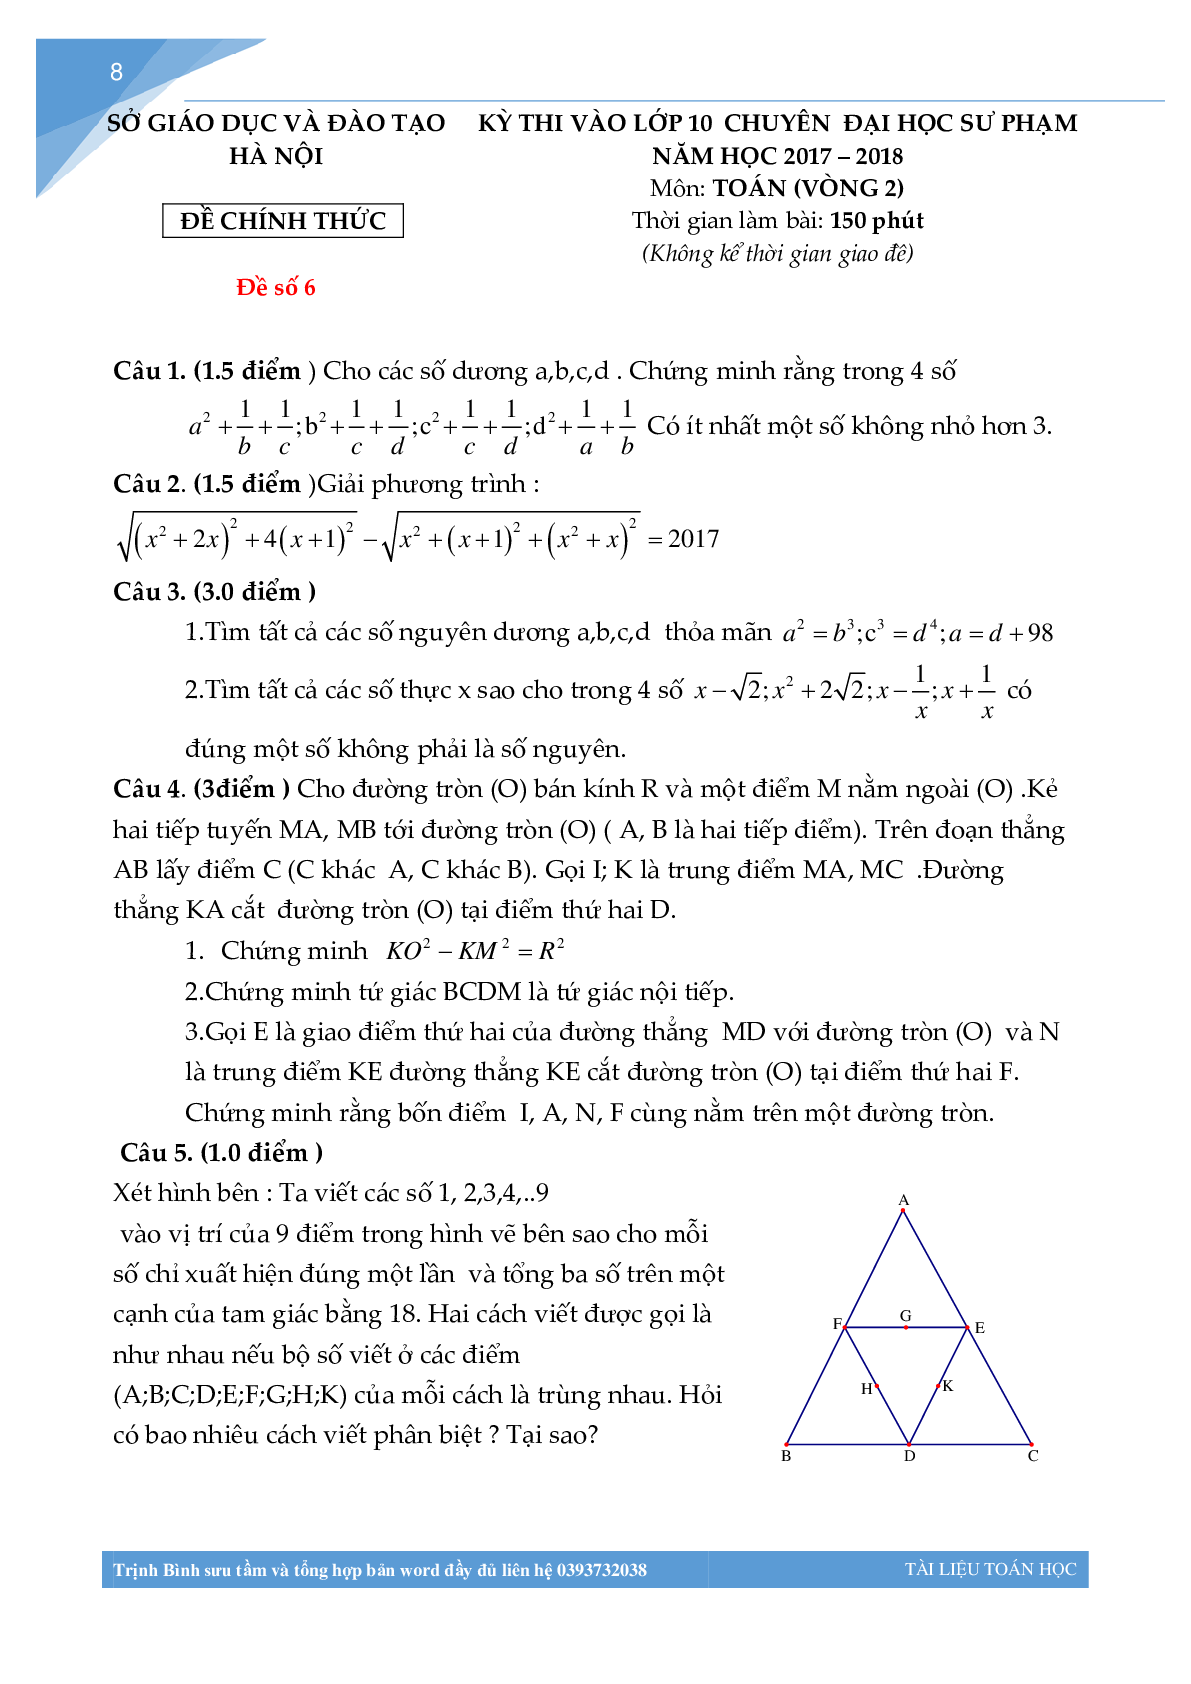 Bộ đề thi toán vào lớp 10 chuyên đại học sư phạm Hà Nội (trang 7)